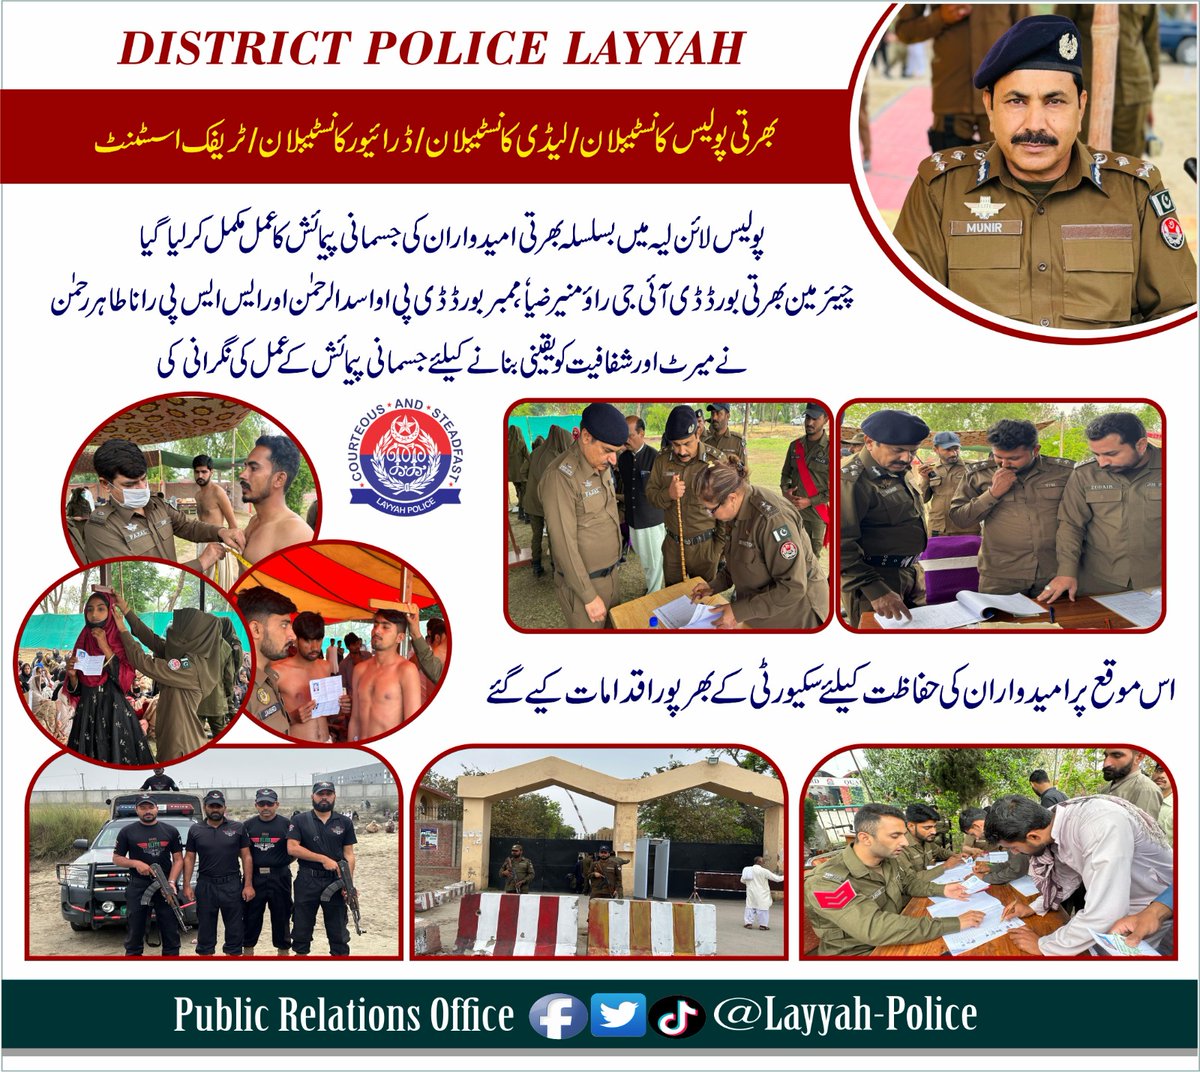 پولیس لائنز لیہ میں بھرتی کانسٹیبلان/لیڈی کانسٹیبلان/ ڈرائیور کانسٹیبلان/ ٹریفک اسسٹنٹ کے سلسلے میں جسمانی پیمائش کا مرحلہ مکمل کر لیا گیا ہے ۔ #LayyahPolice #PunjabPolice #AtYourService #Recruitment #PoliceAwamSaathSaath